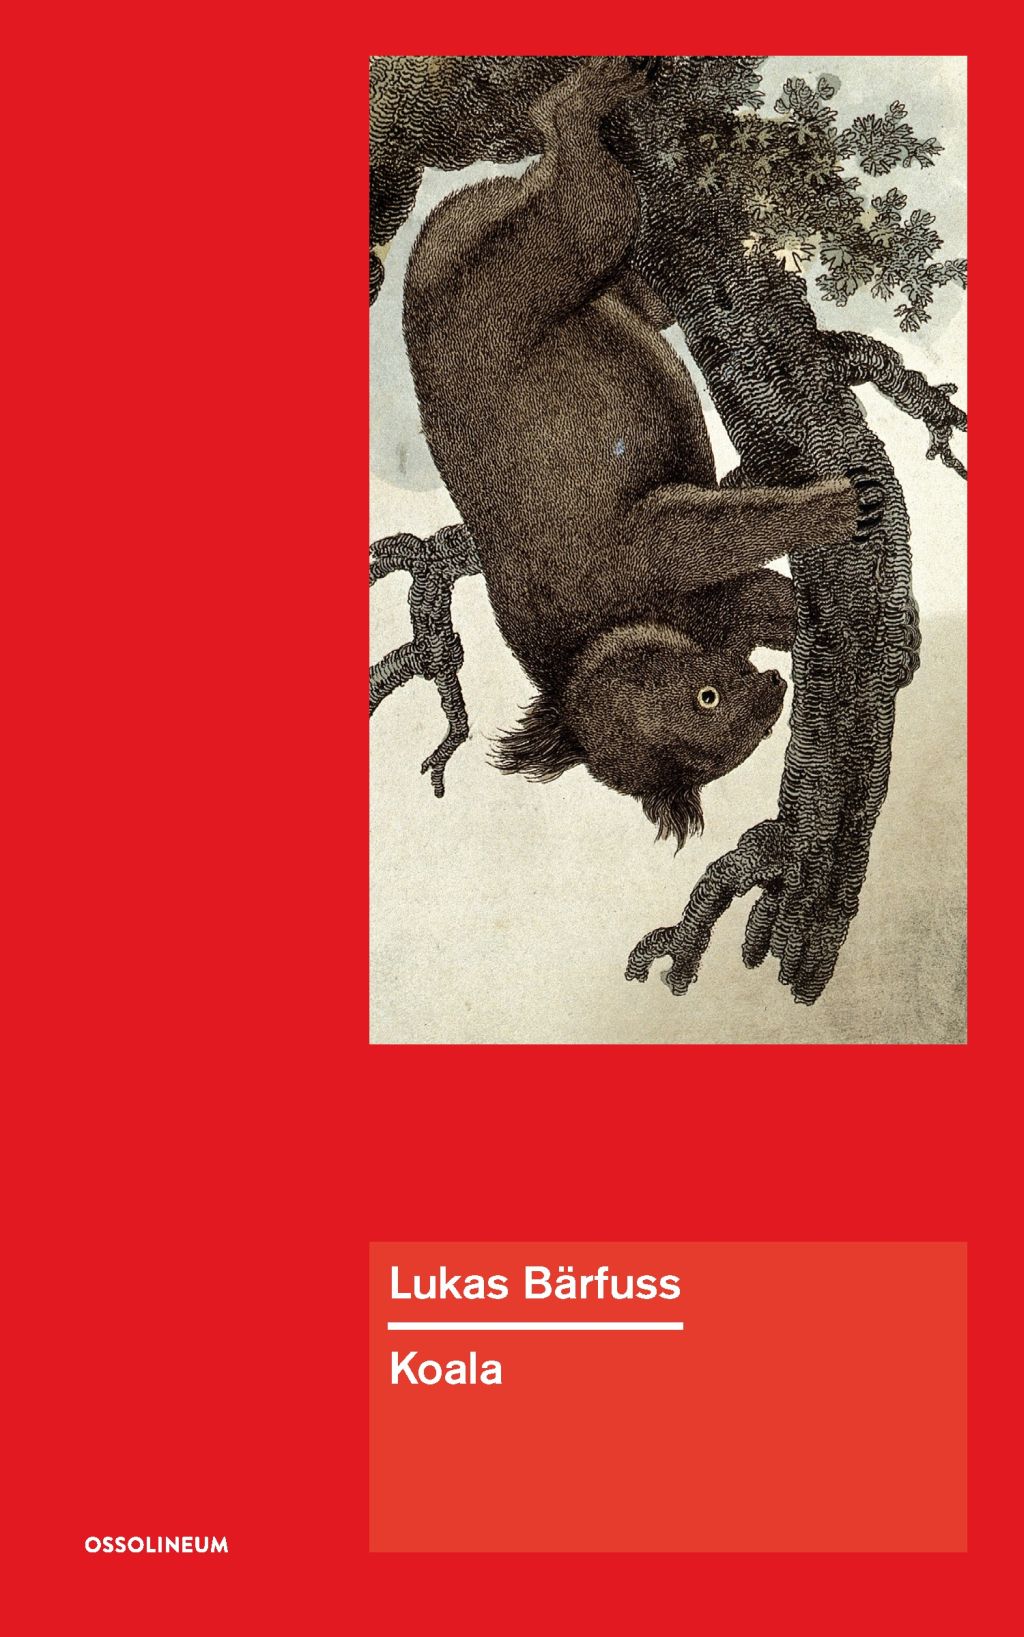 Lukas Bärfuss, „Koala” (źródło: materiały prasowe wydawcy)